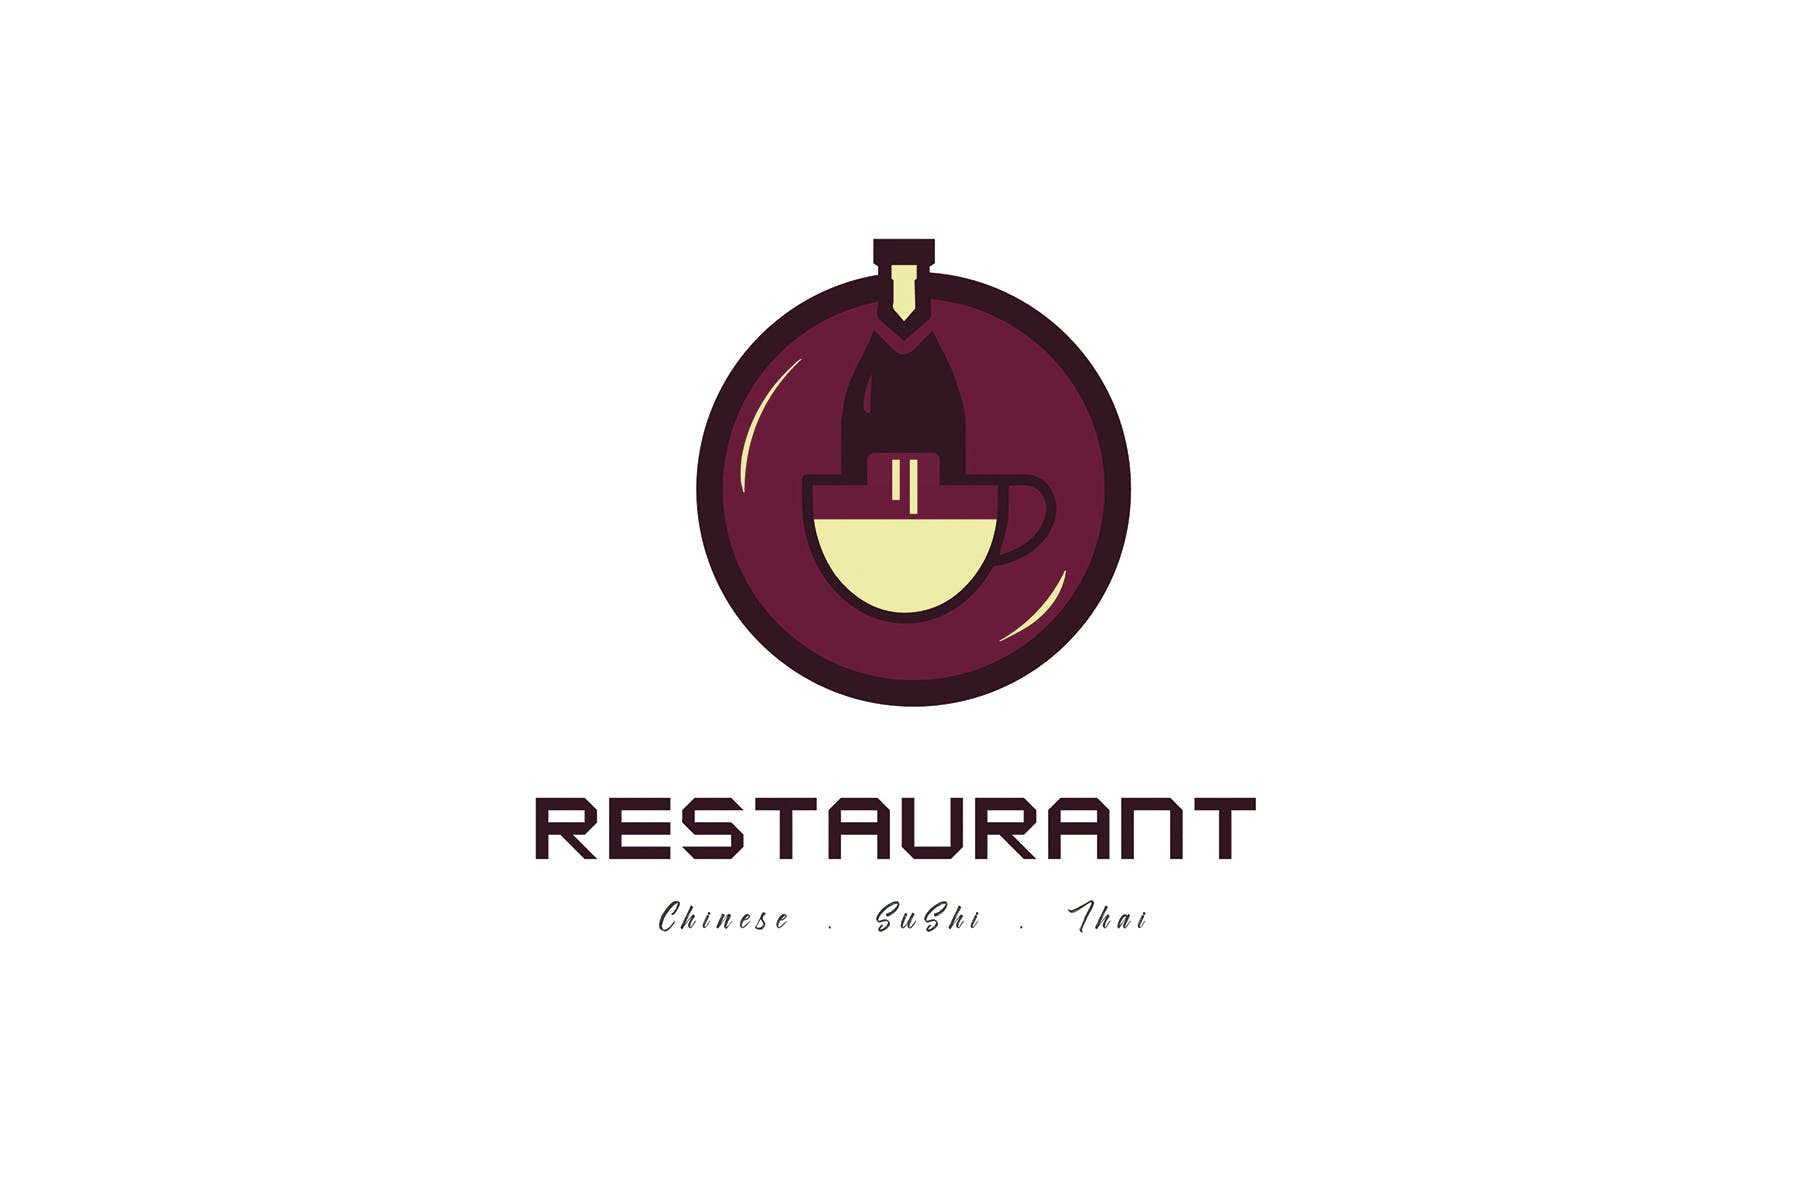 餐馆定制Logo设计第一素材精选模板 Restaurant Logo Templates插图(1)